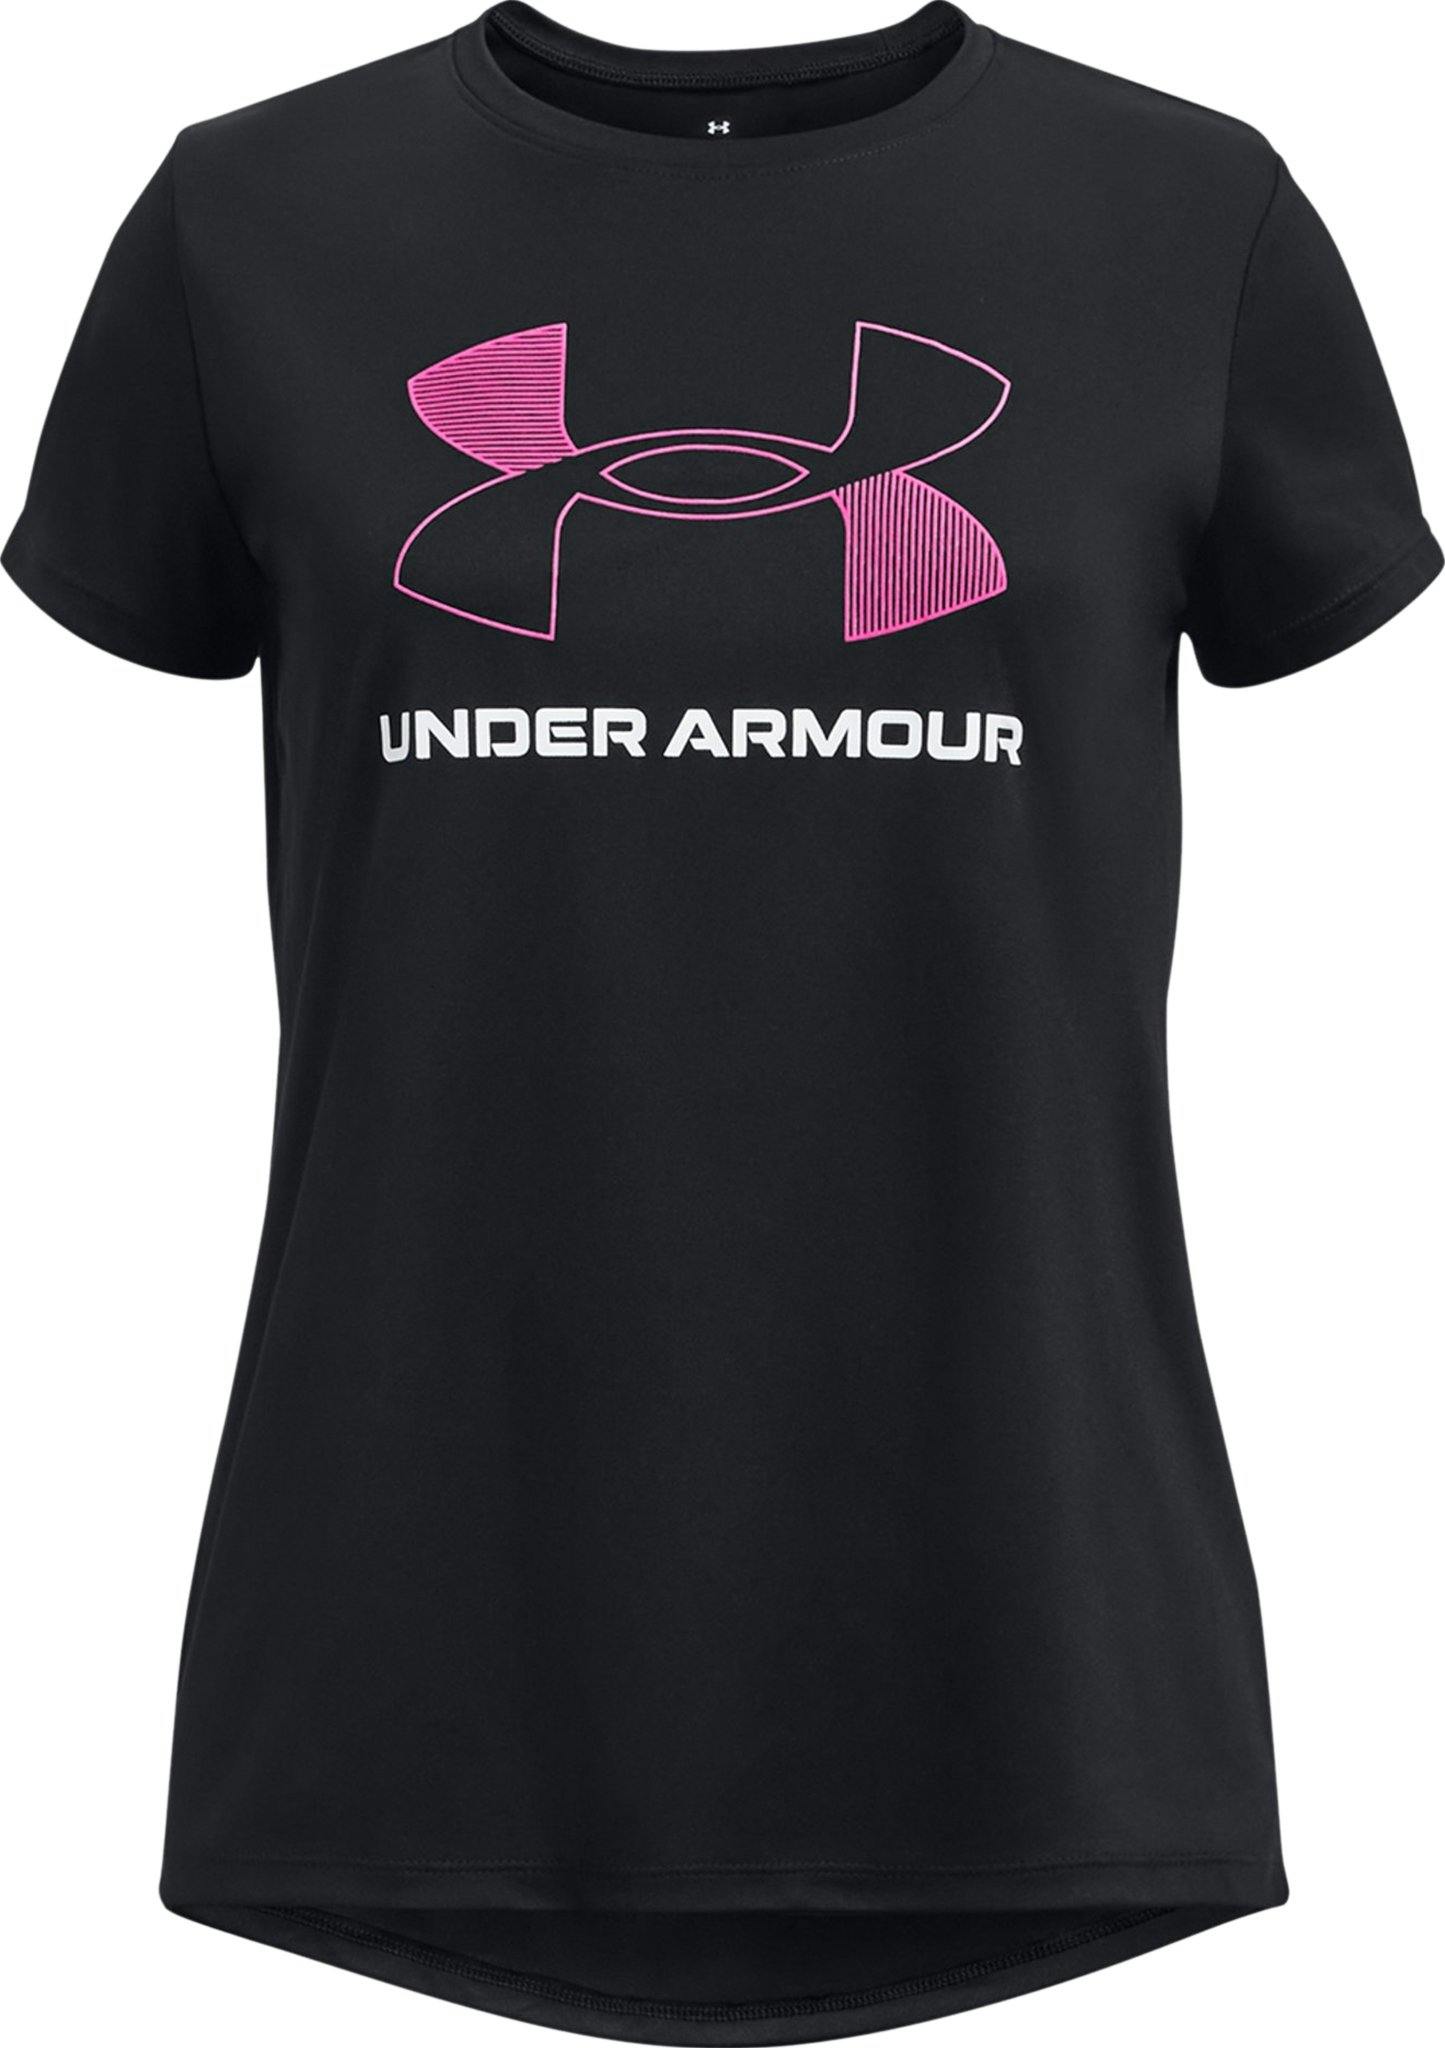 Image de produit pour T-shirt avec gros logo UA Tech - Fille